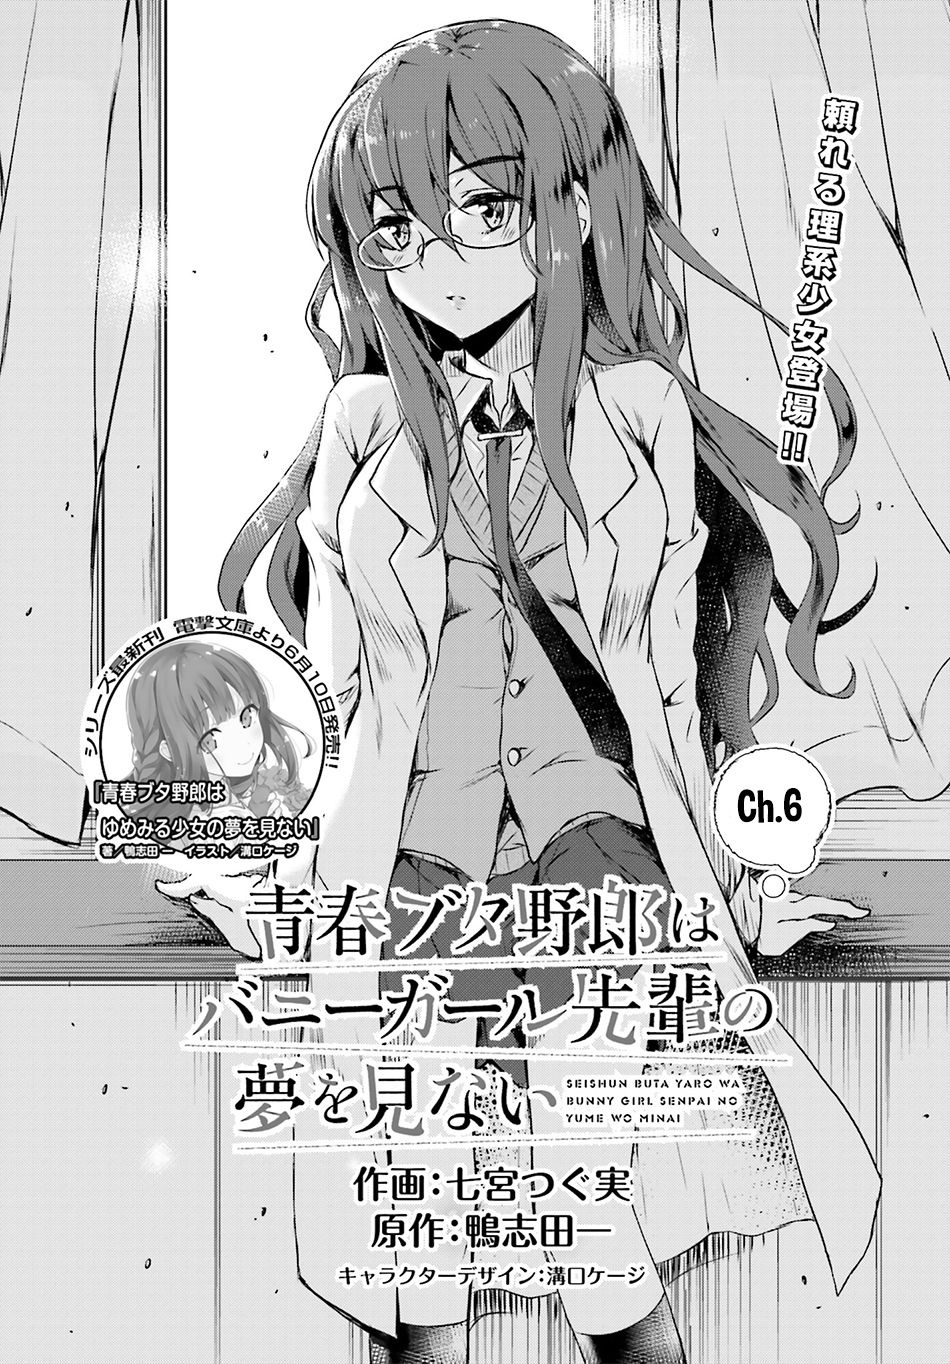 Read Manga Seishun Buta Yarou Wa Bunny Girl Senpai No Yume O Minai